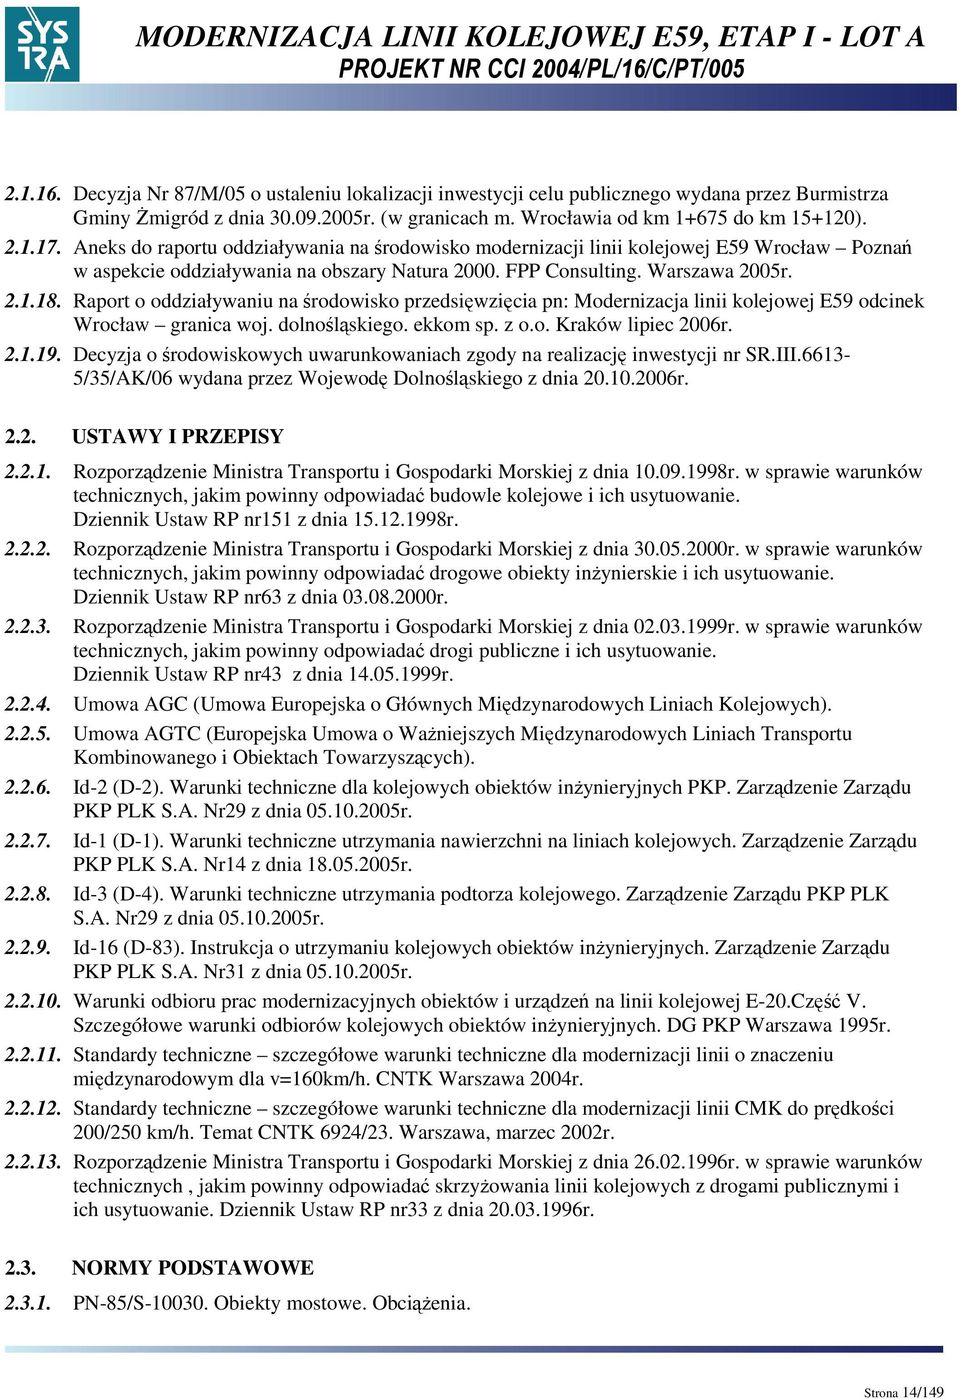 Raport o oddziaływaniu na środowisko przedsięwzięcia pn: Modernizacja linii kolejowej E59 odcinek Wrocław granica woj. dolnośląskiego. ekkom sp. z o.o. Kraków lipiec 2006r. 2.1.19.